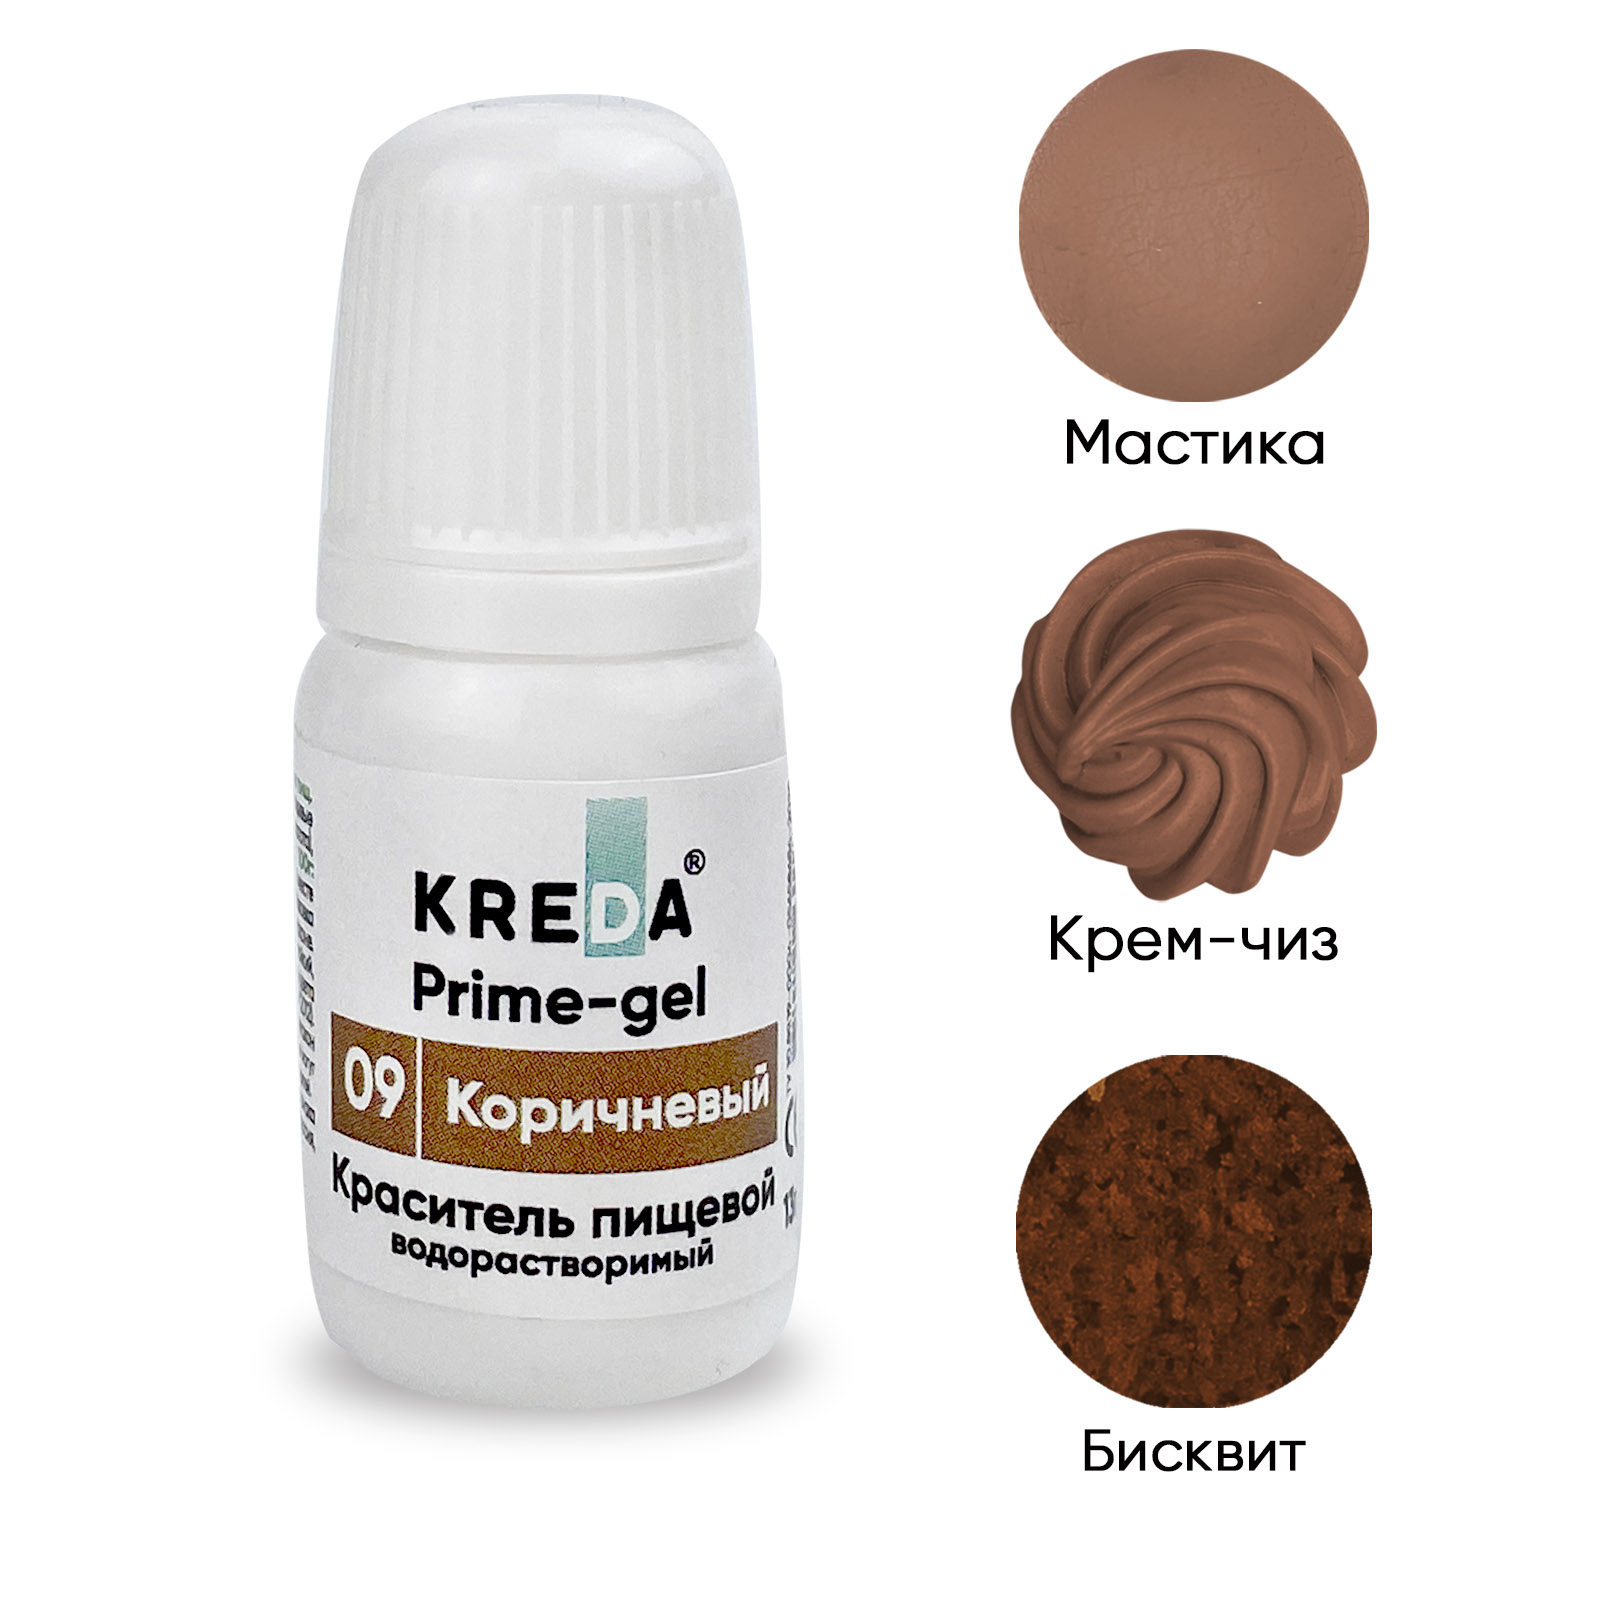 Краситель пищевой Kreda Bio Prime-gel, водорастворимый, коричневый, 10 мл